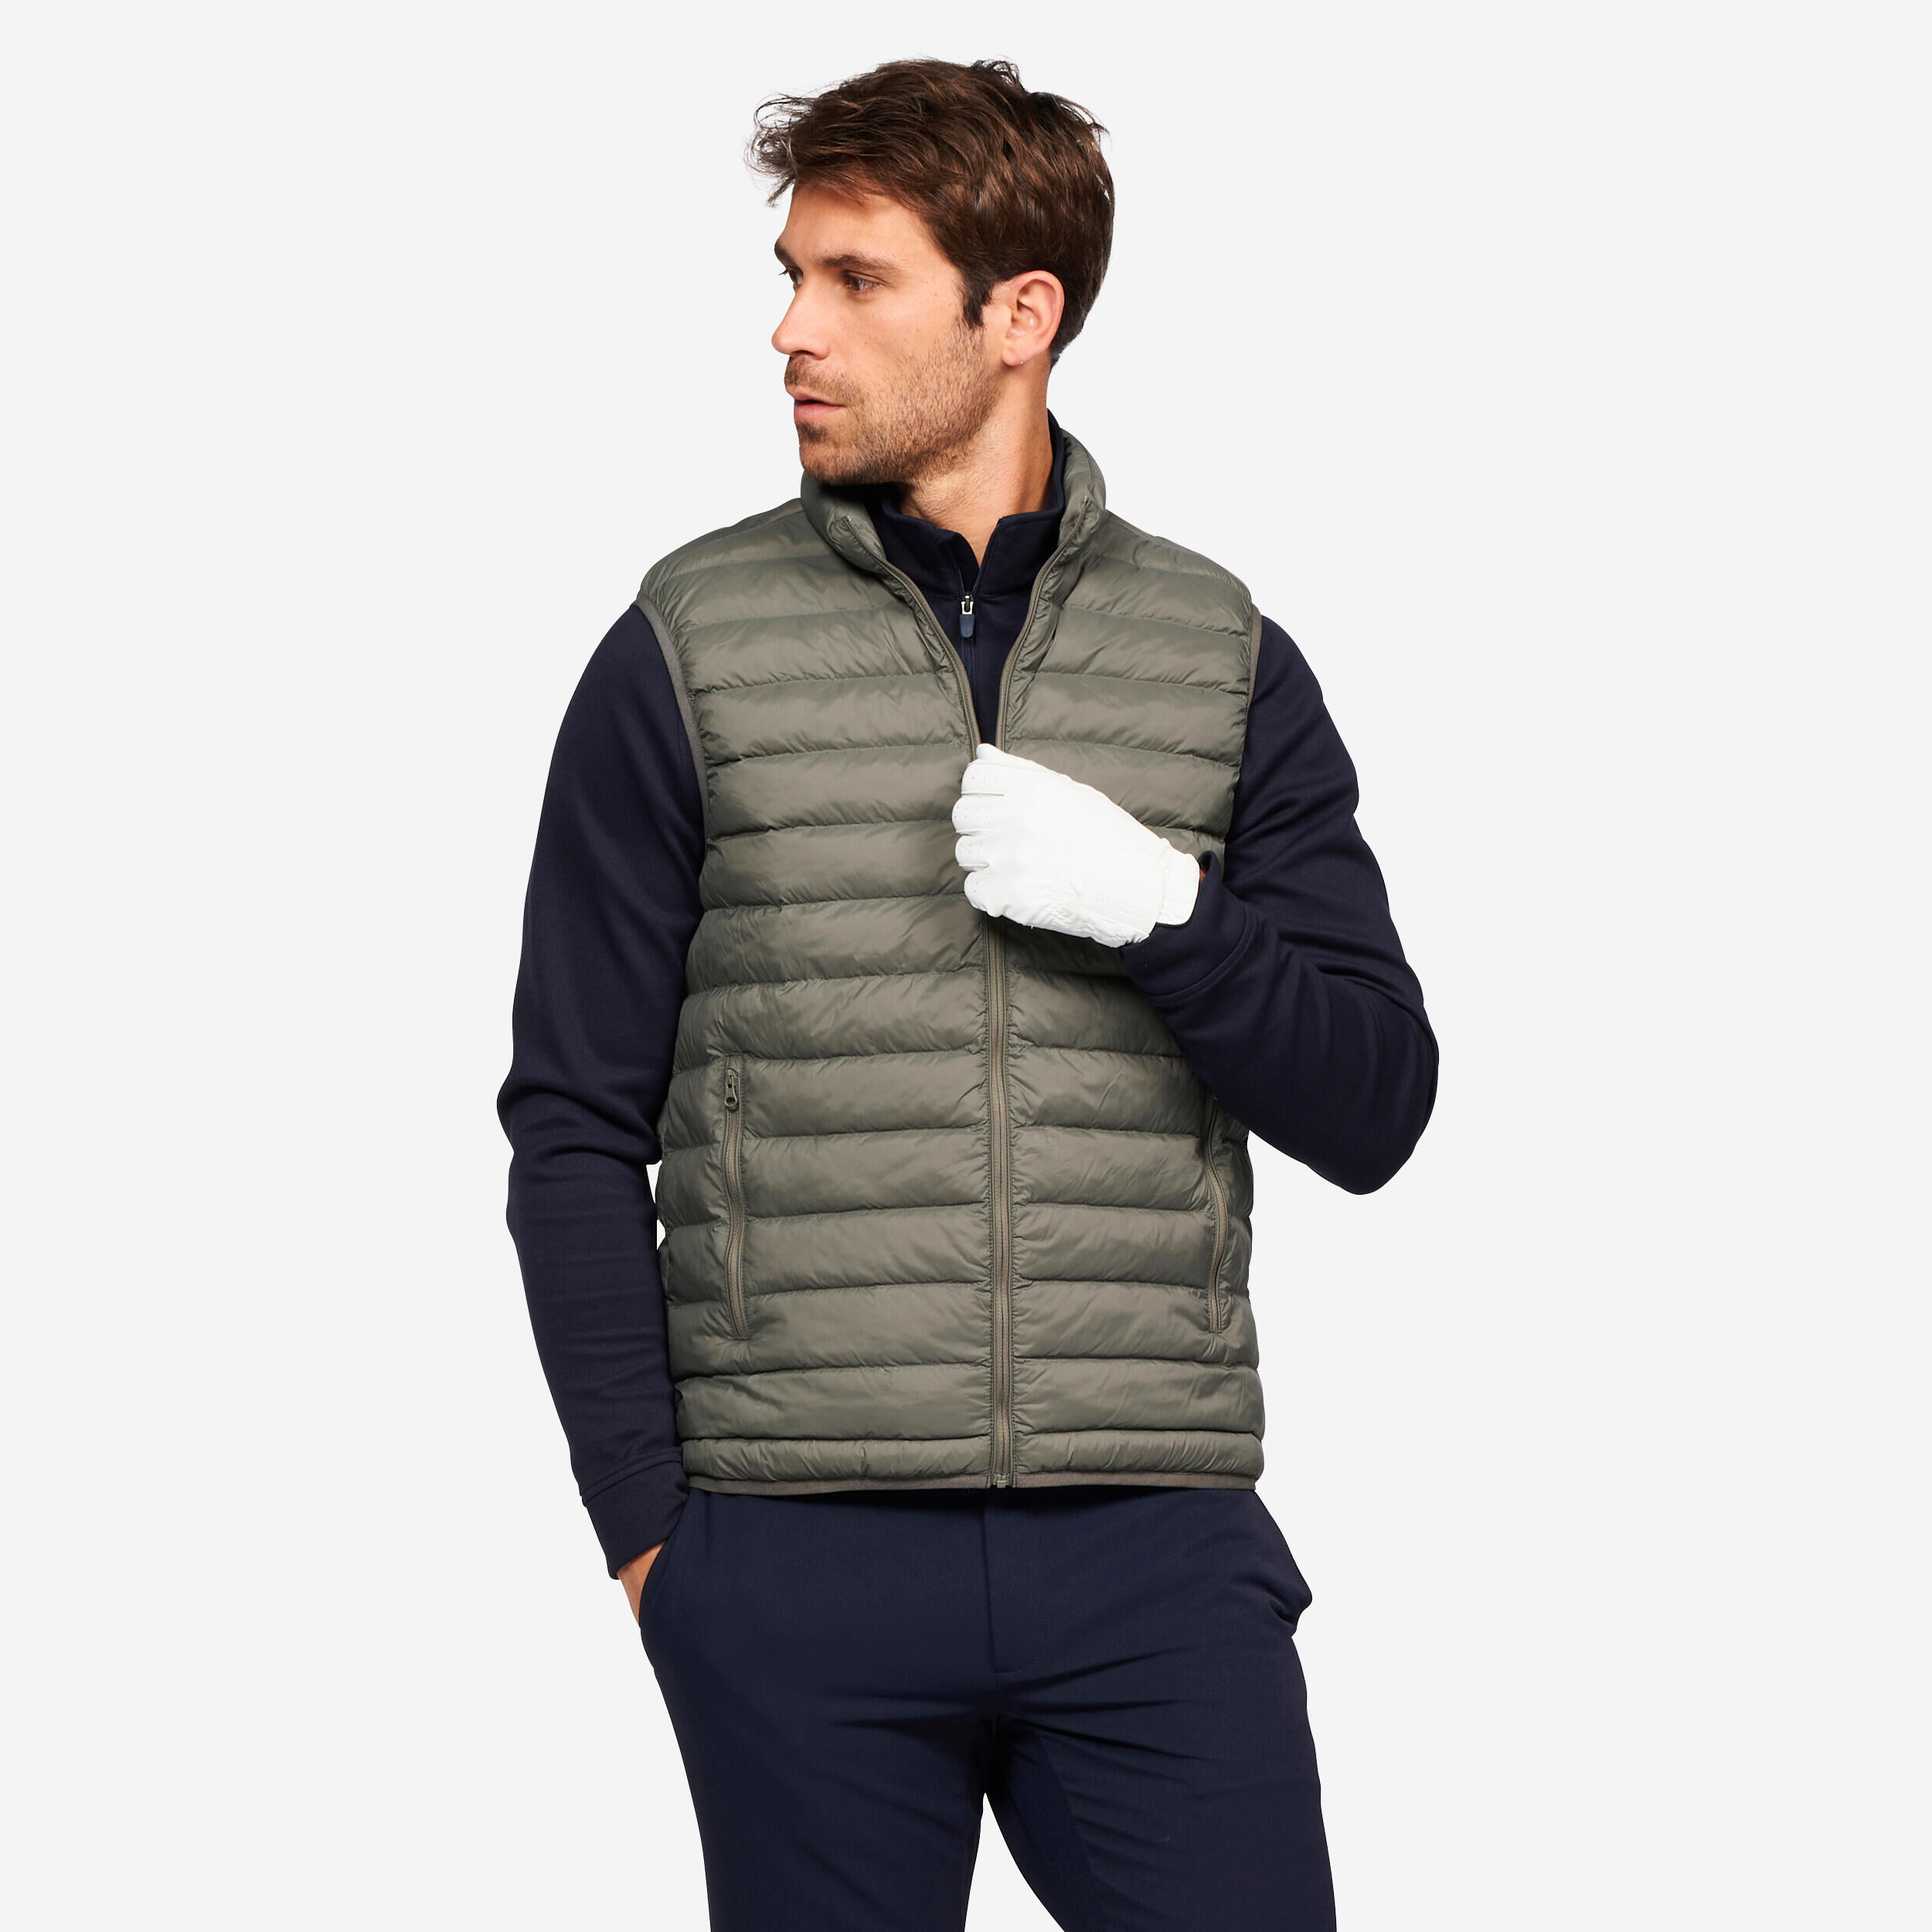 INESIS Men's golf sleeveless down jacket - MW500 khaki